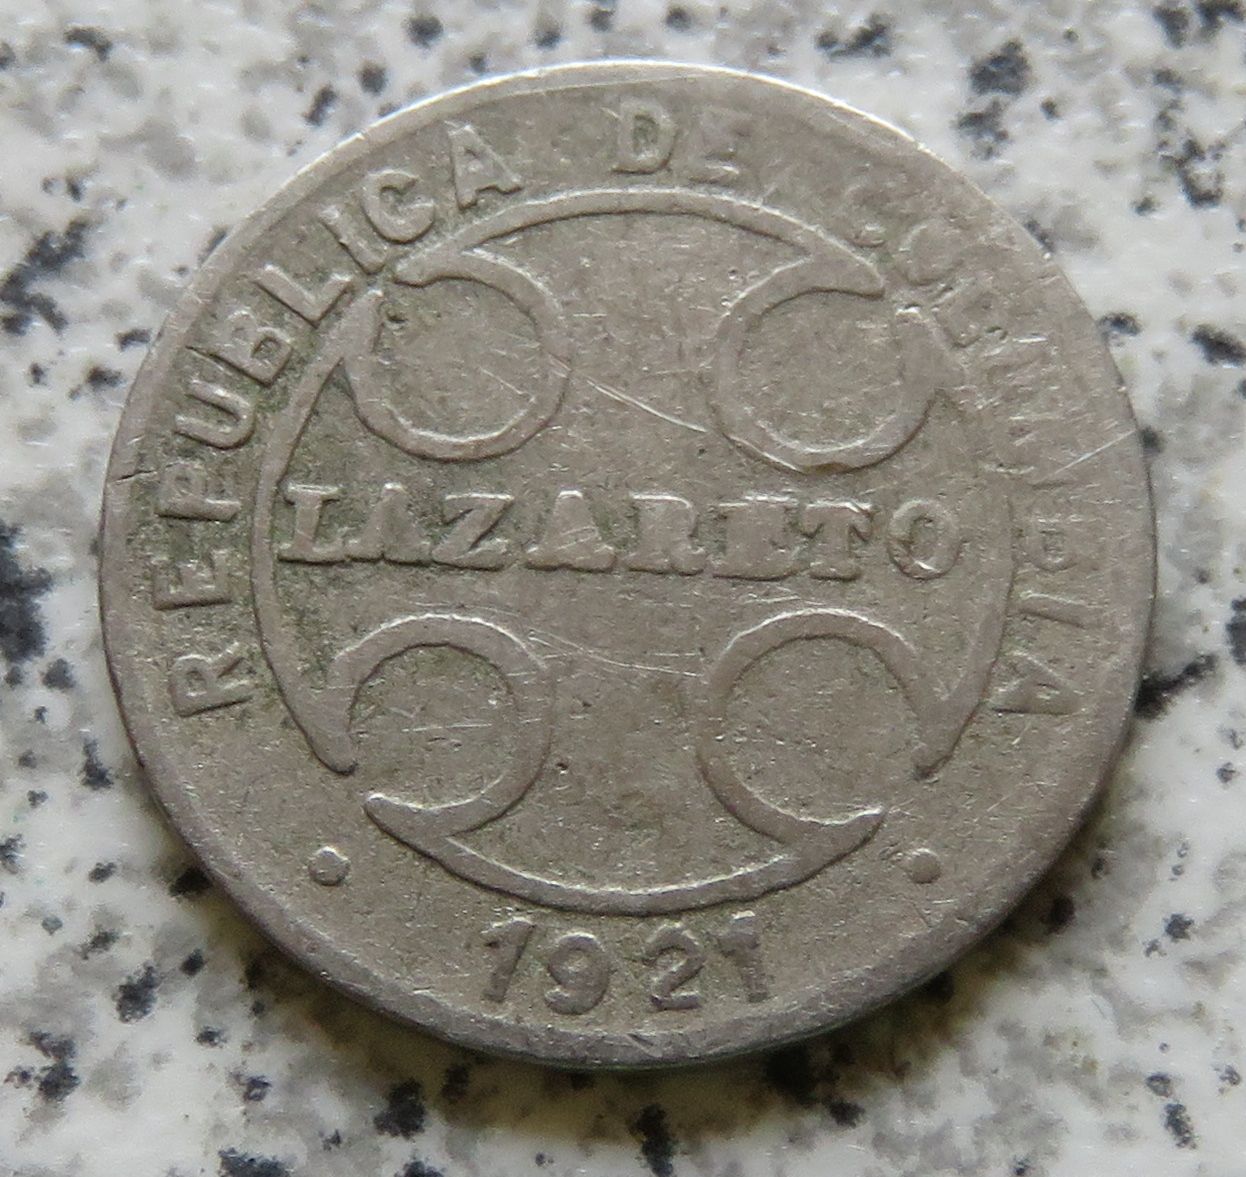  Kolumbien Lazarettmünze 1 Centavo 1921, selten   